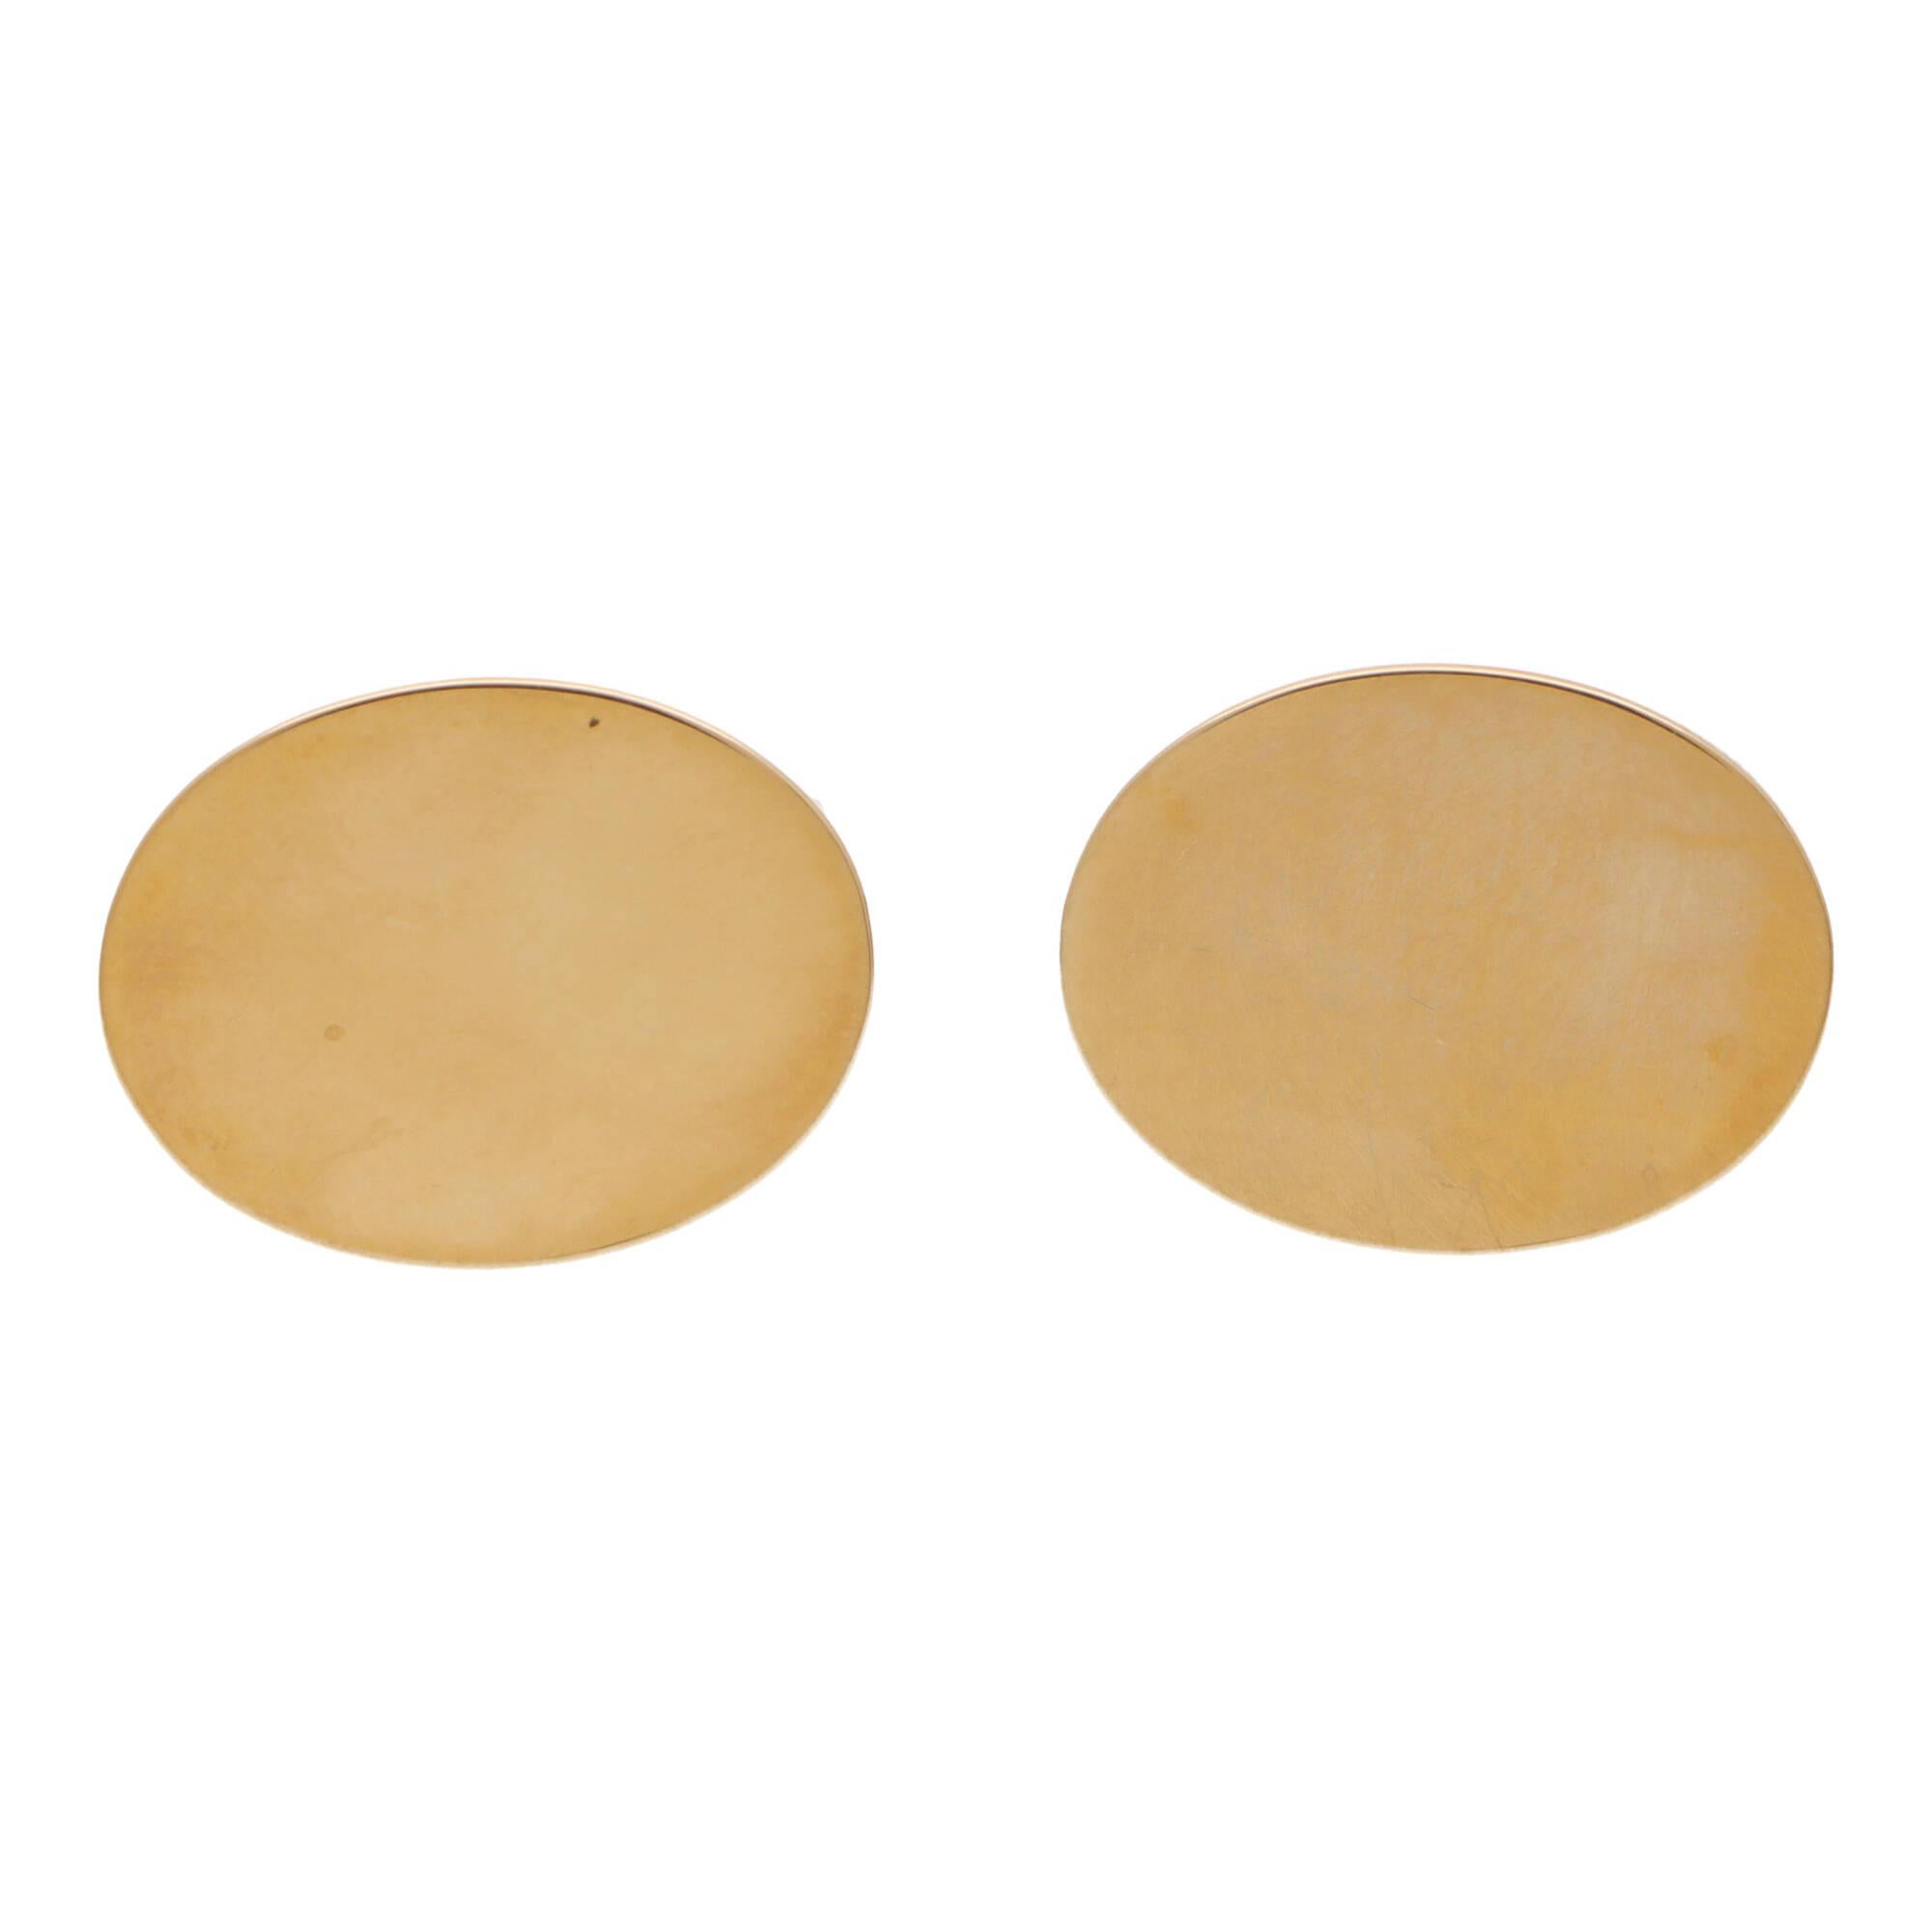 Une élégante paire de boutons de manchette vintage de Tiffany & Co. en or jaune 14 carats.

Les boutons de manchette sont en or jaune 14 carats massif et représentent deux ovales allongés sur un support pivotant. Grâce à leur taille et à leur